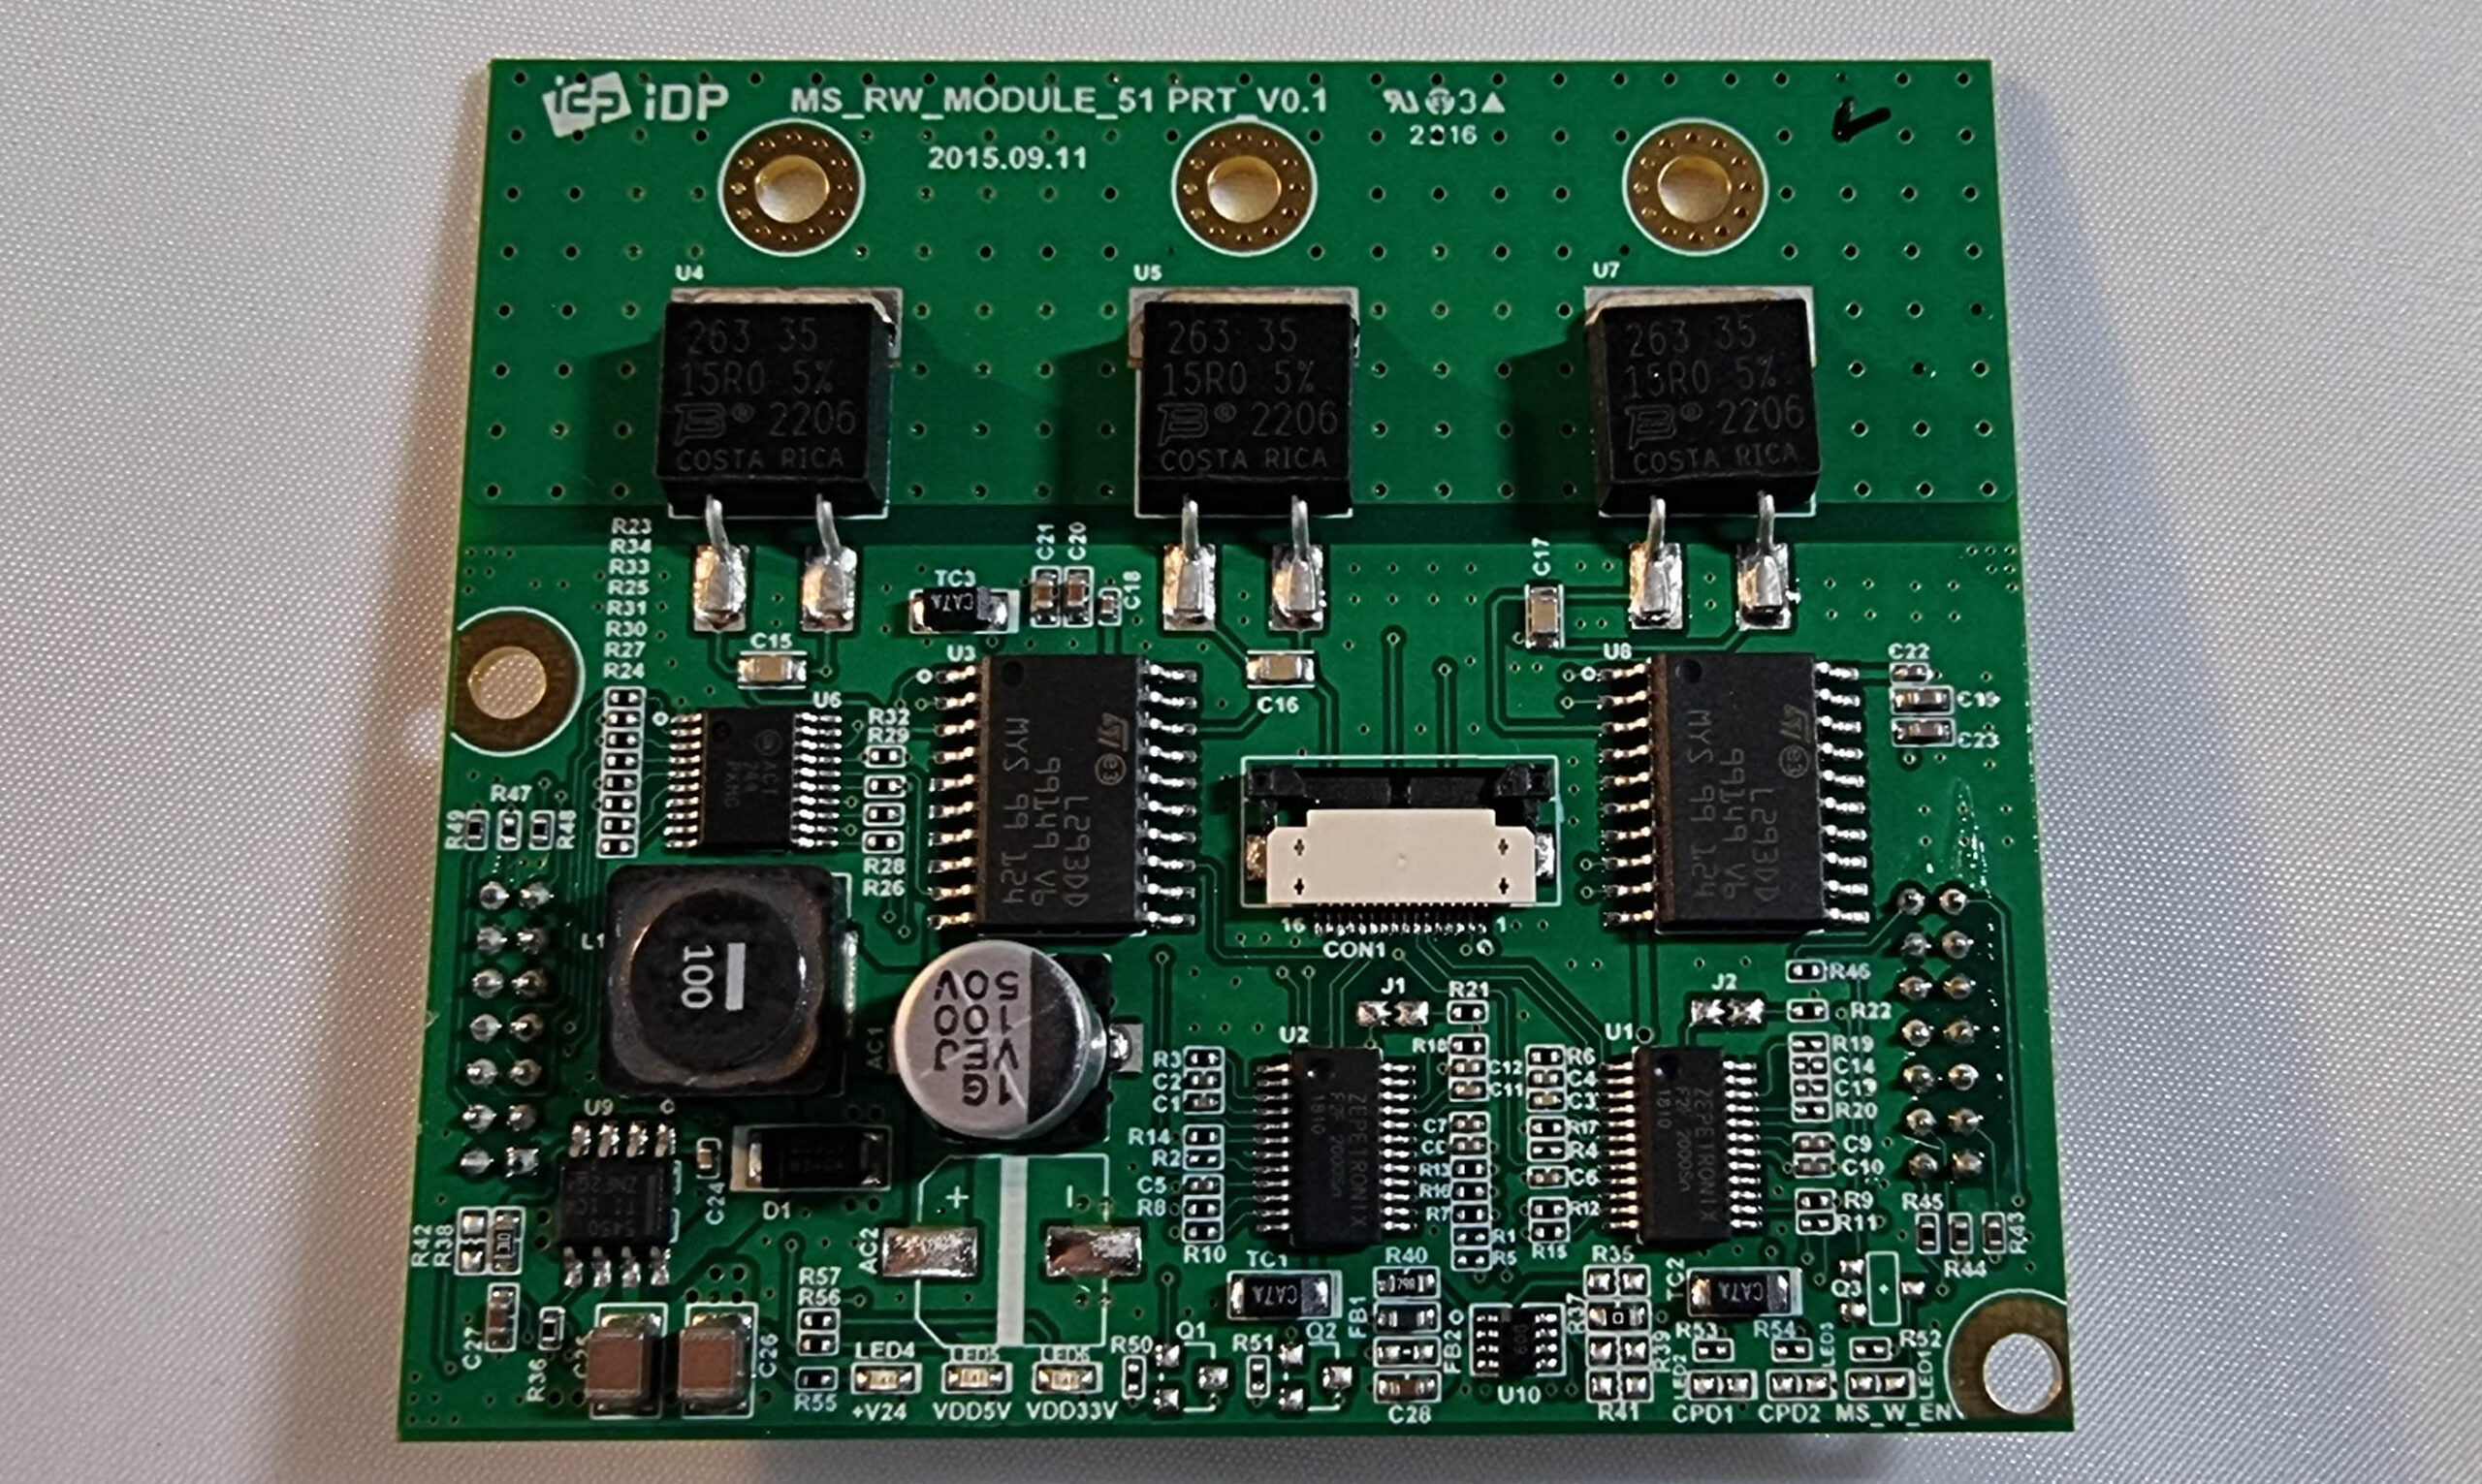 Кодировщик магнитной полосы для принтеров Advent SOLID-510 в Чите